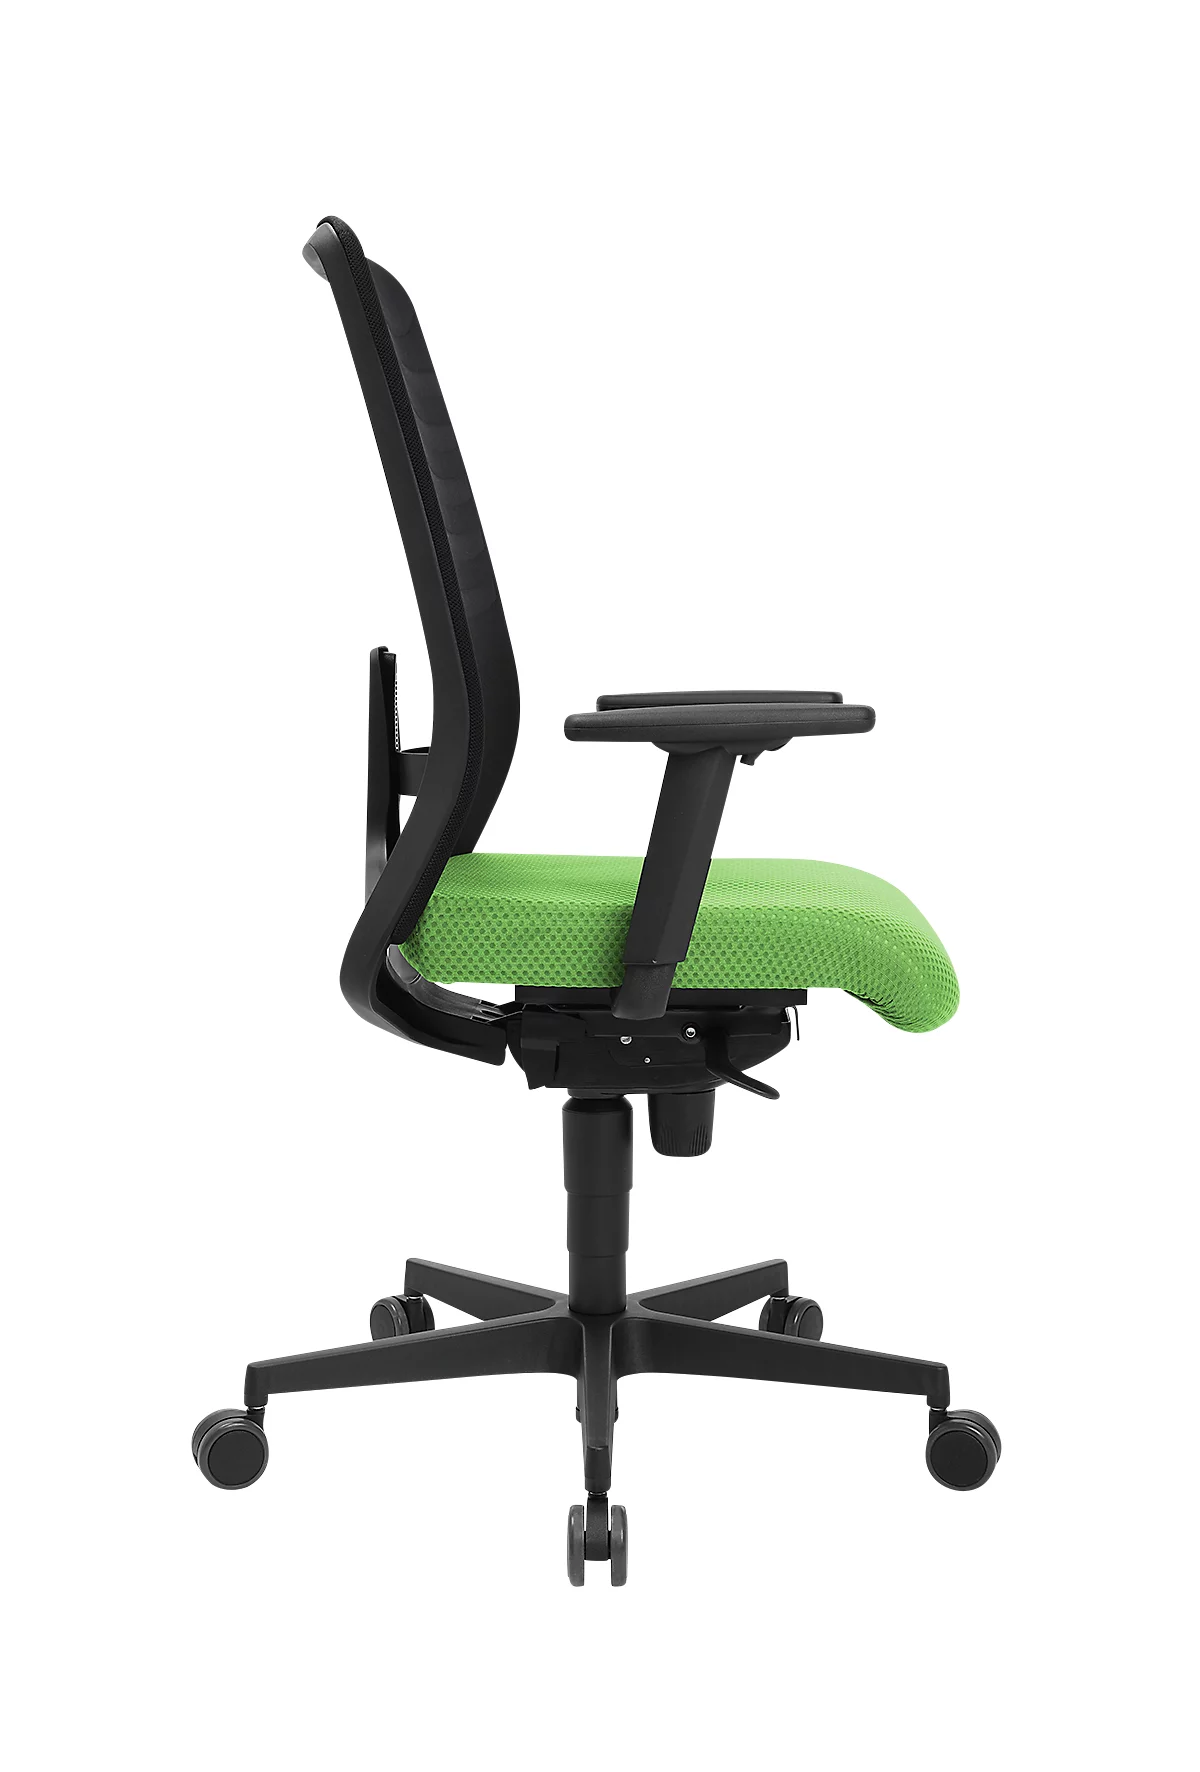 Schäfer Shop Silla de oficina Genius SSI Lady Proline, con reposabrazos, mecanismo síncrono de tres puntos, asiento wellness, respaldo de malla 3D, negro/verde